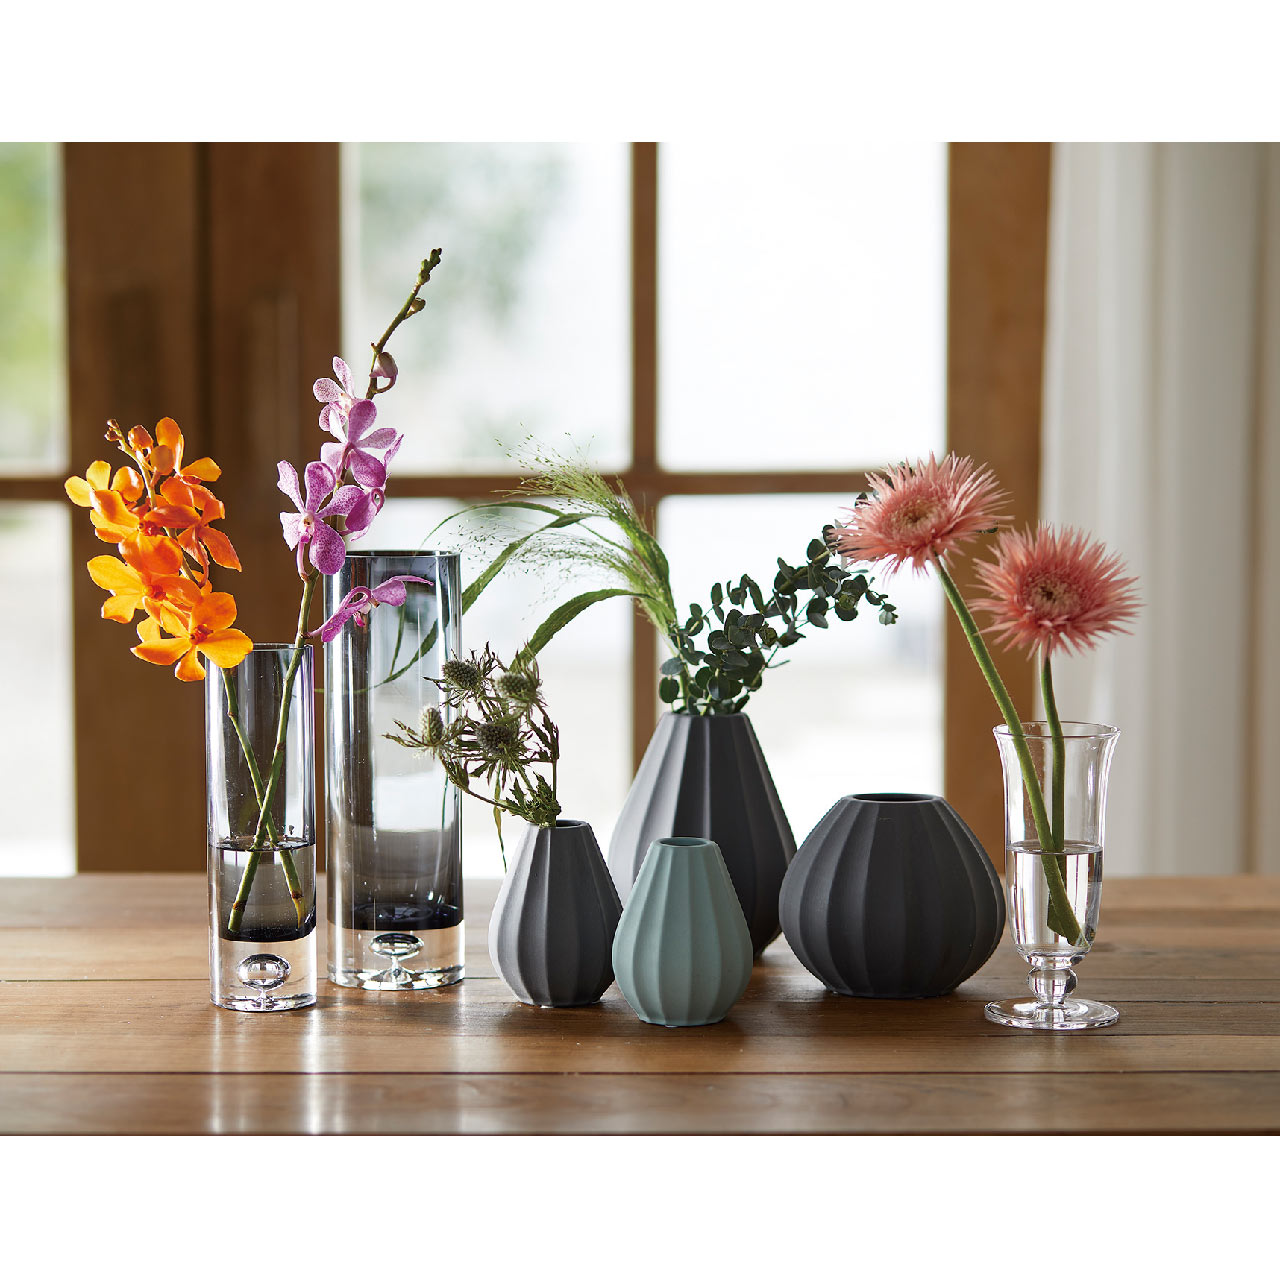 マイフラ 通販 Seva アクアミューs 花瓶 陶器 花器 Gw アクアミュー 花器 花瓶 フレーム 天然素材ベース 全国にmagiq 花器 花資材などをお届けします